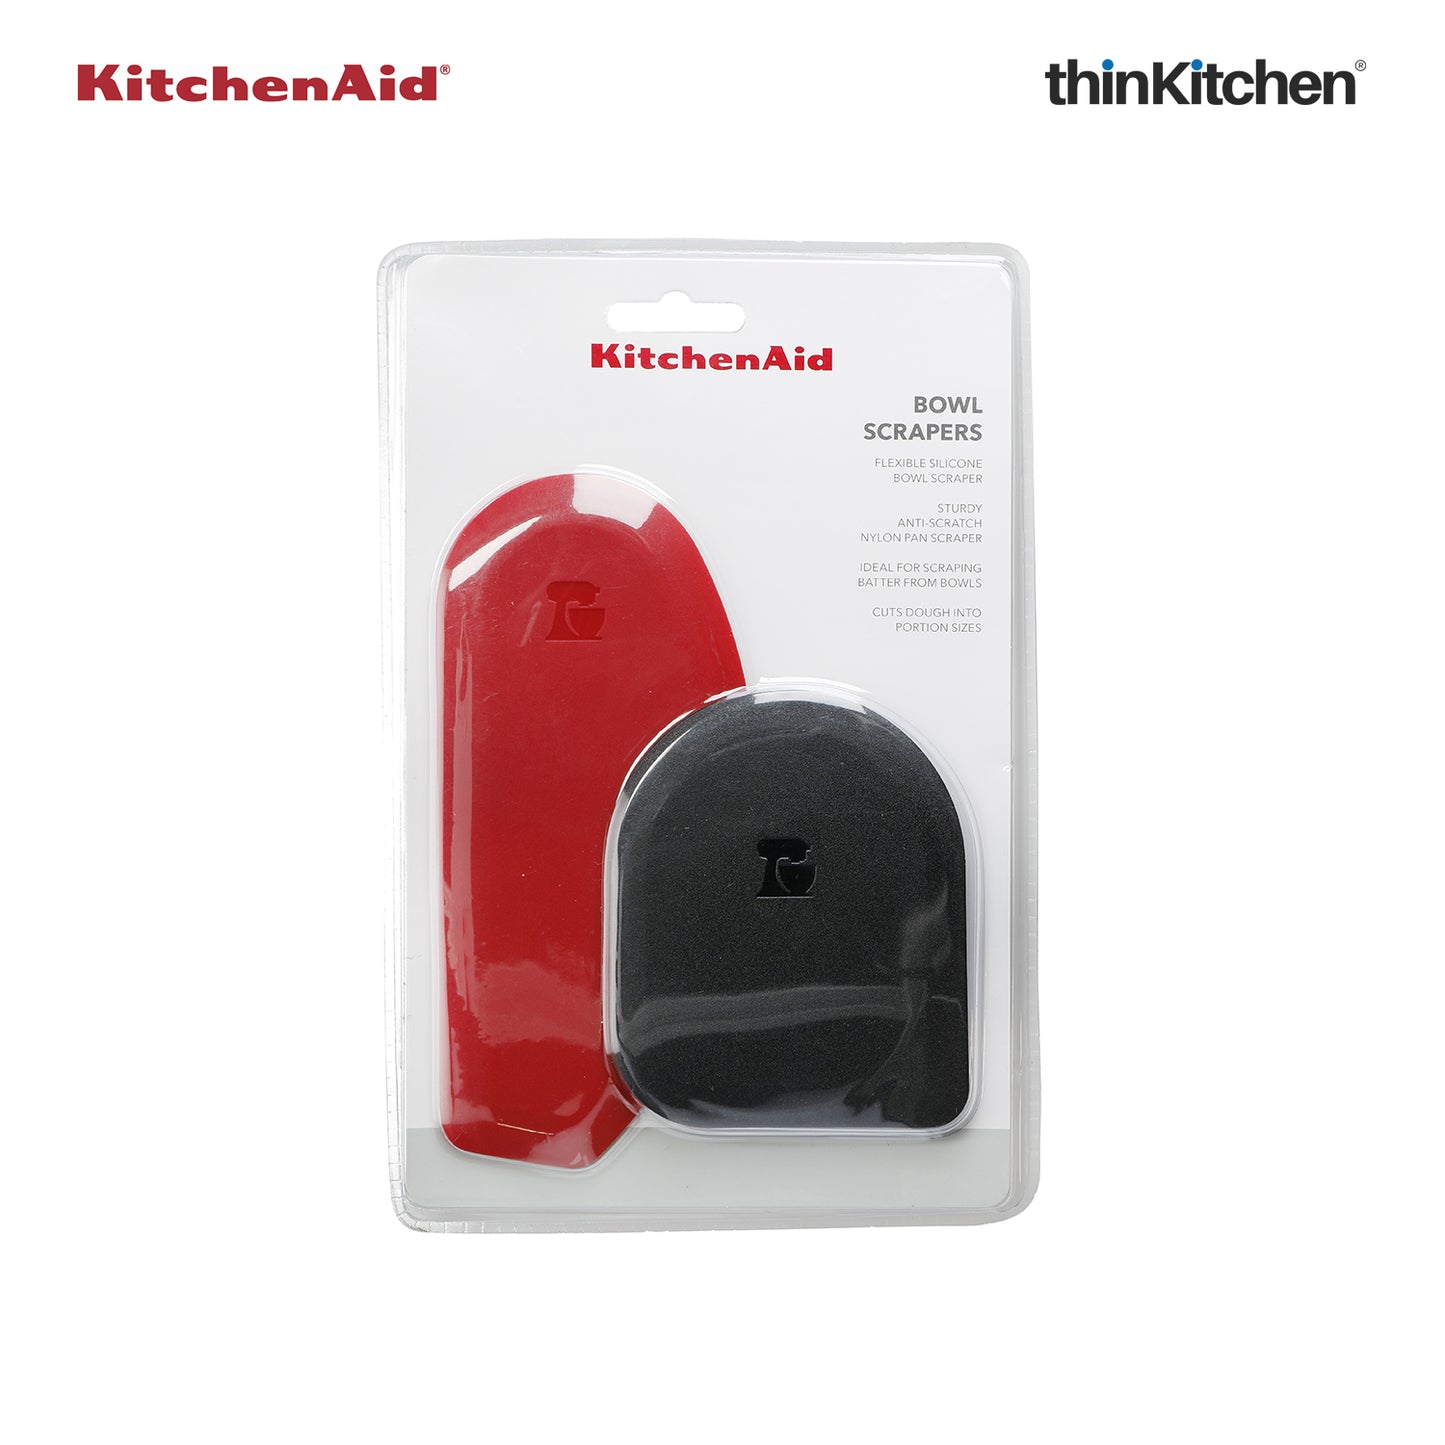 Kitchenaid Pot Scraper And Bowl Scraper Set Empire Red 2 Pc Set